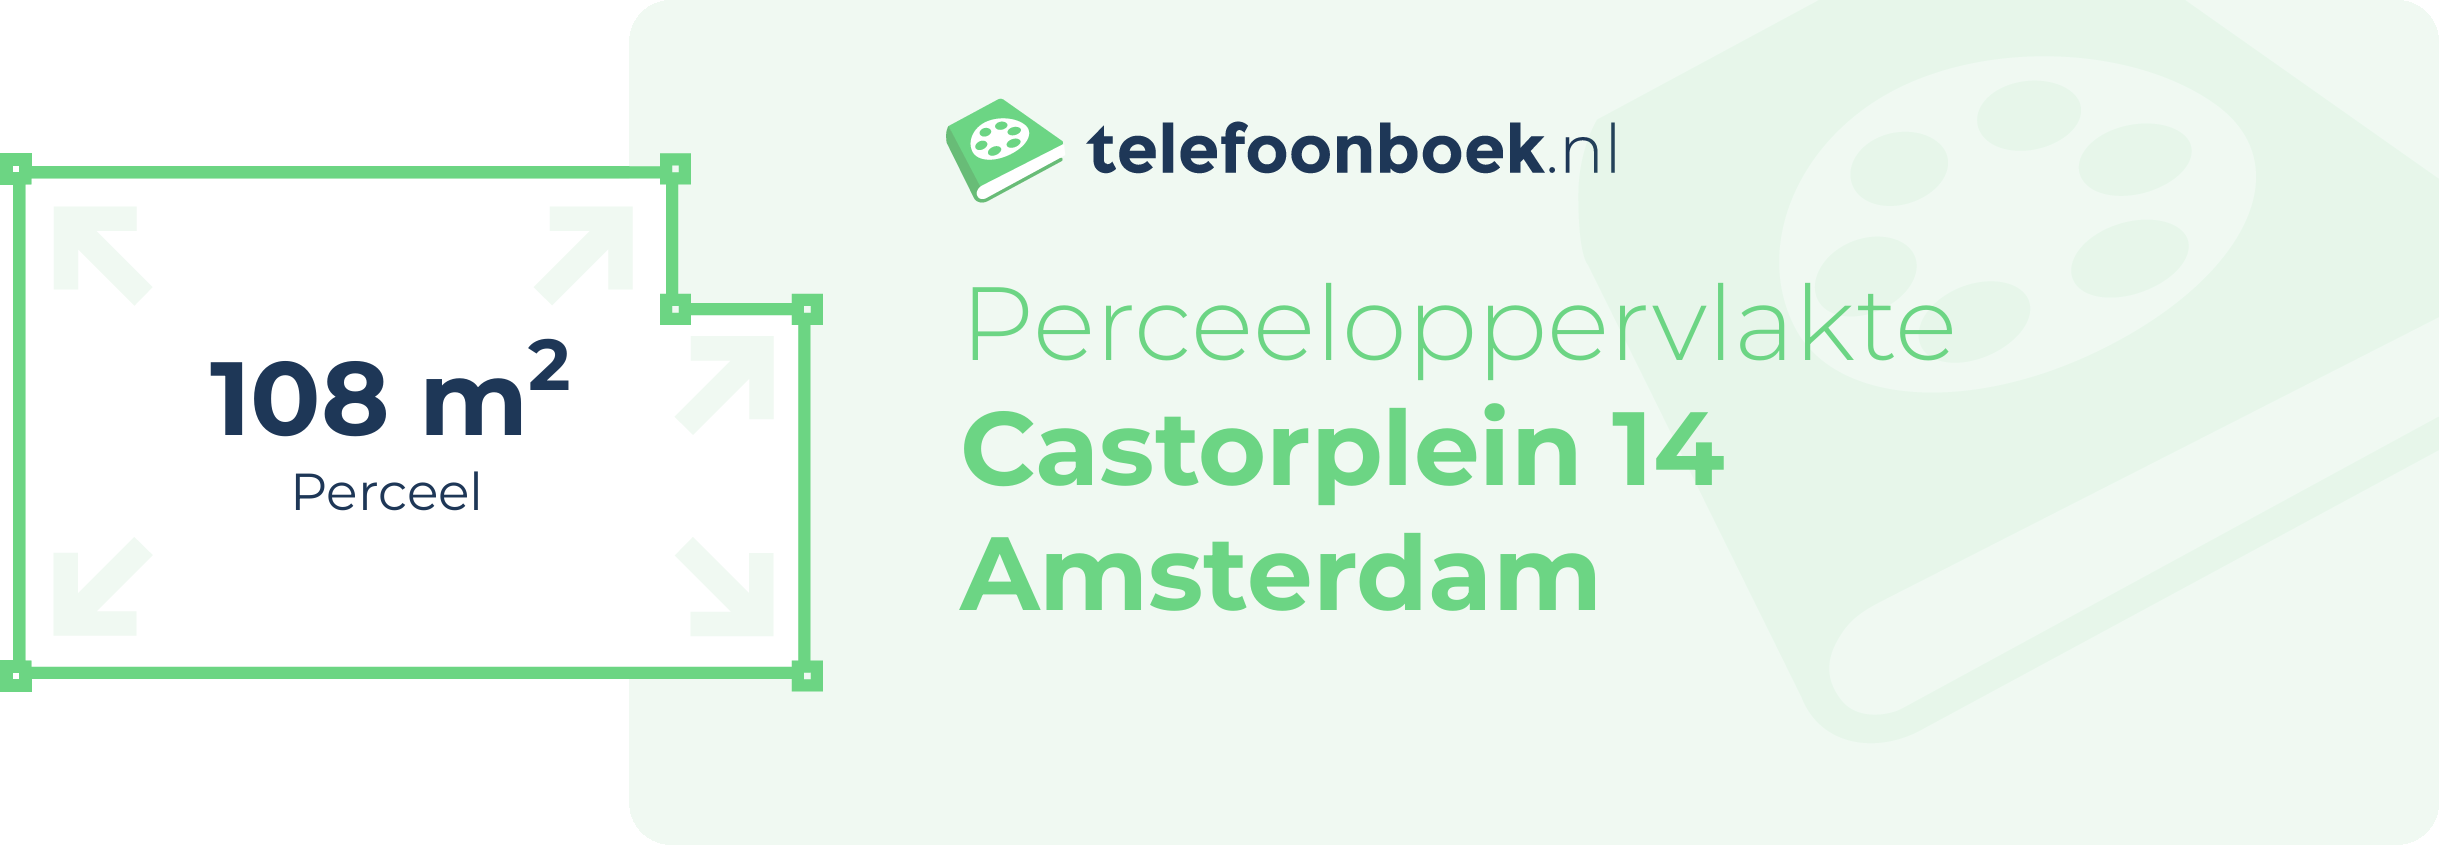 Perceeloppervlakte Castorplein 14 Amsterdam